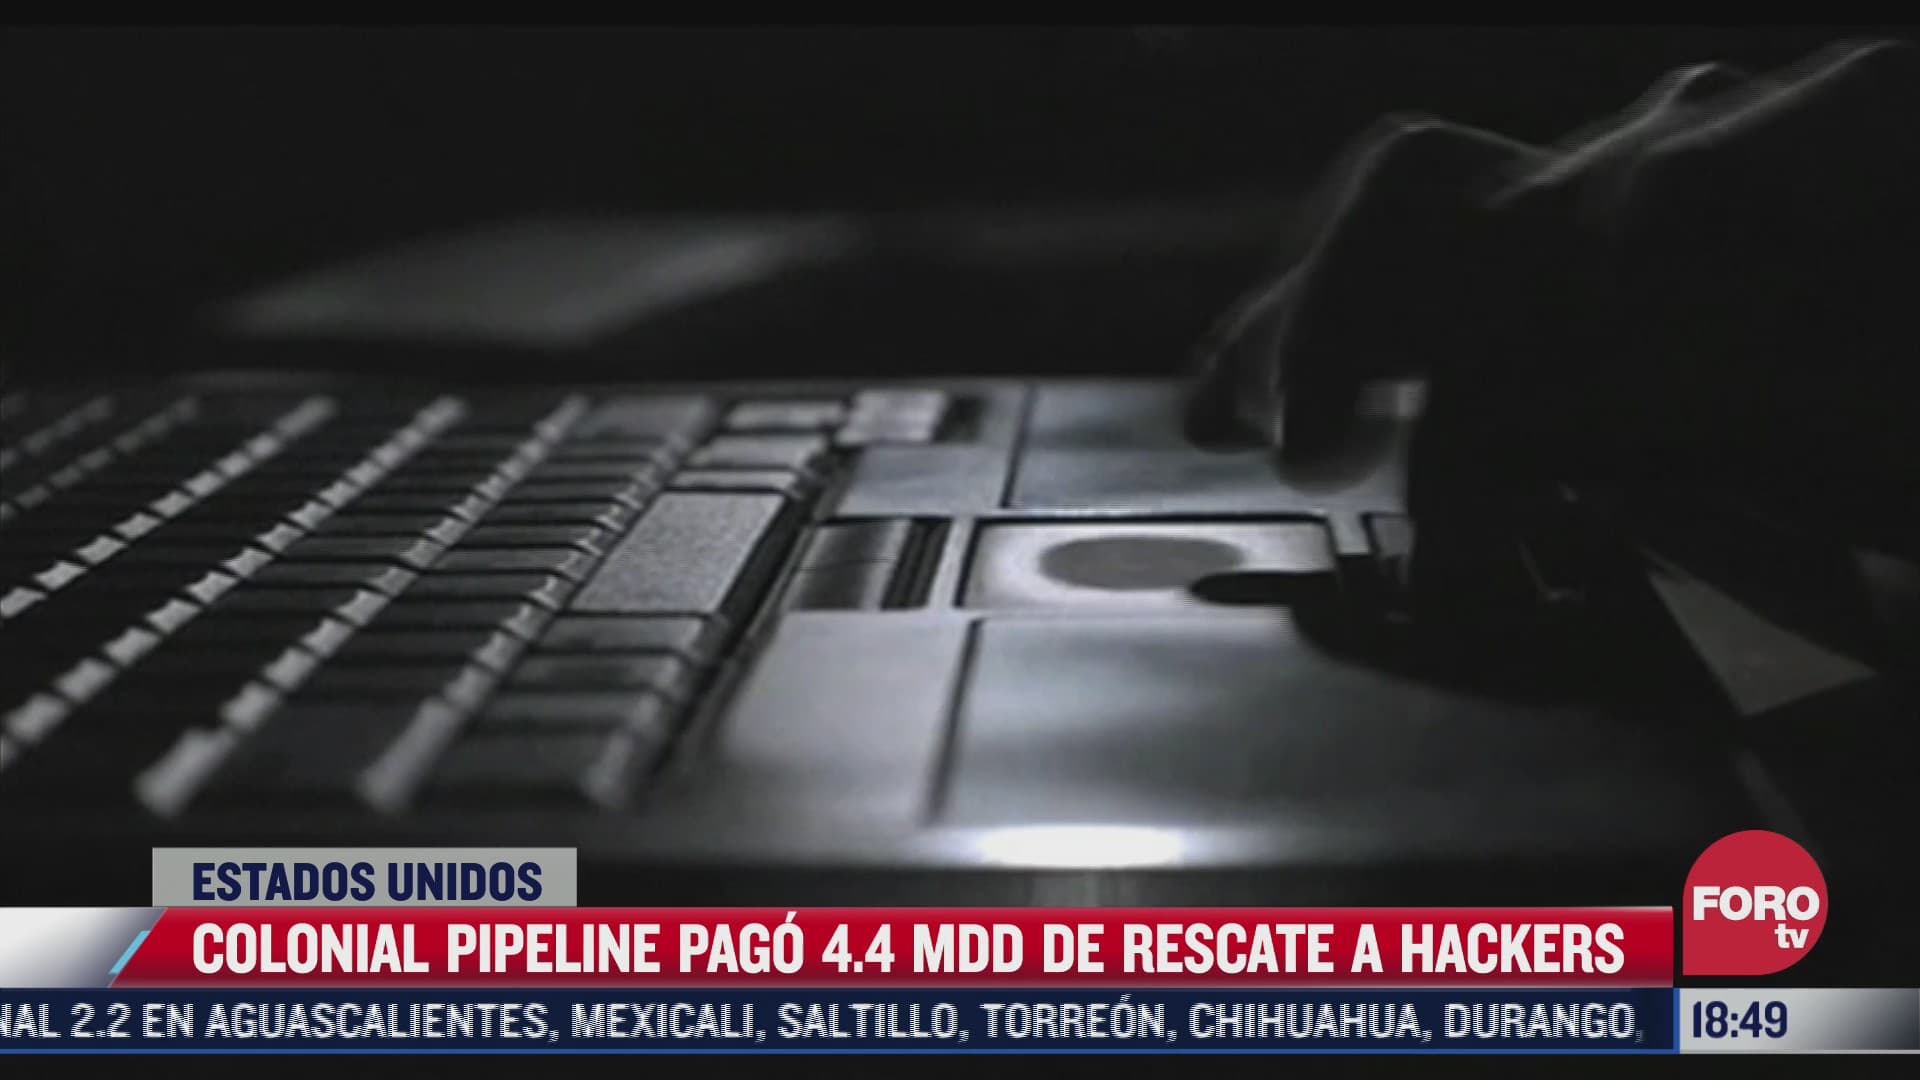 empresa paga mas de 4mdd de rescate a hackers por oleoductos